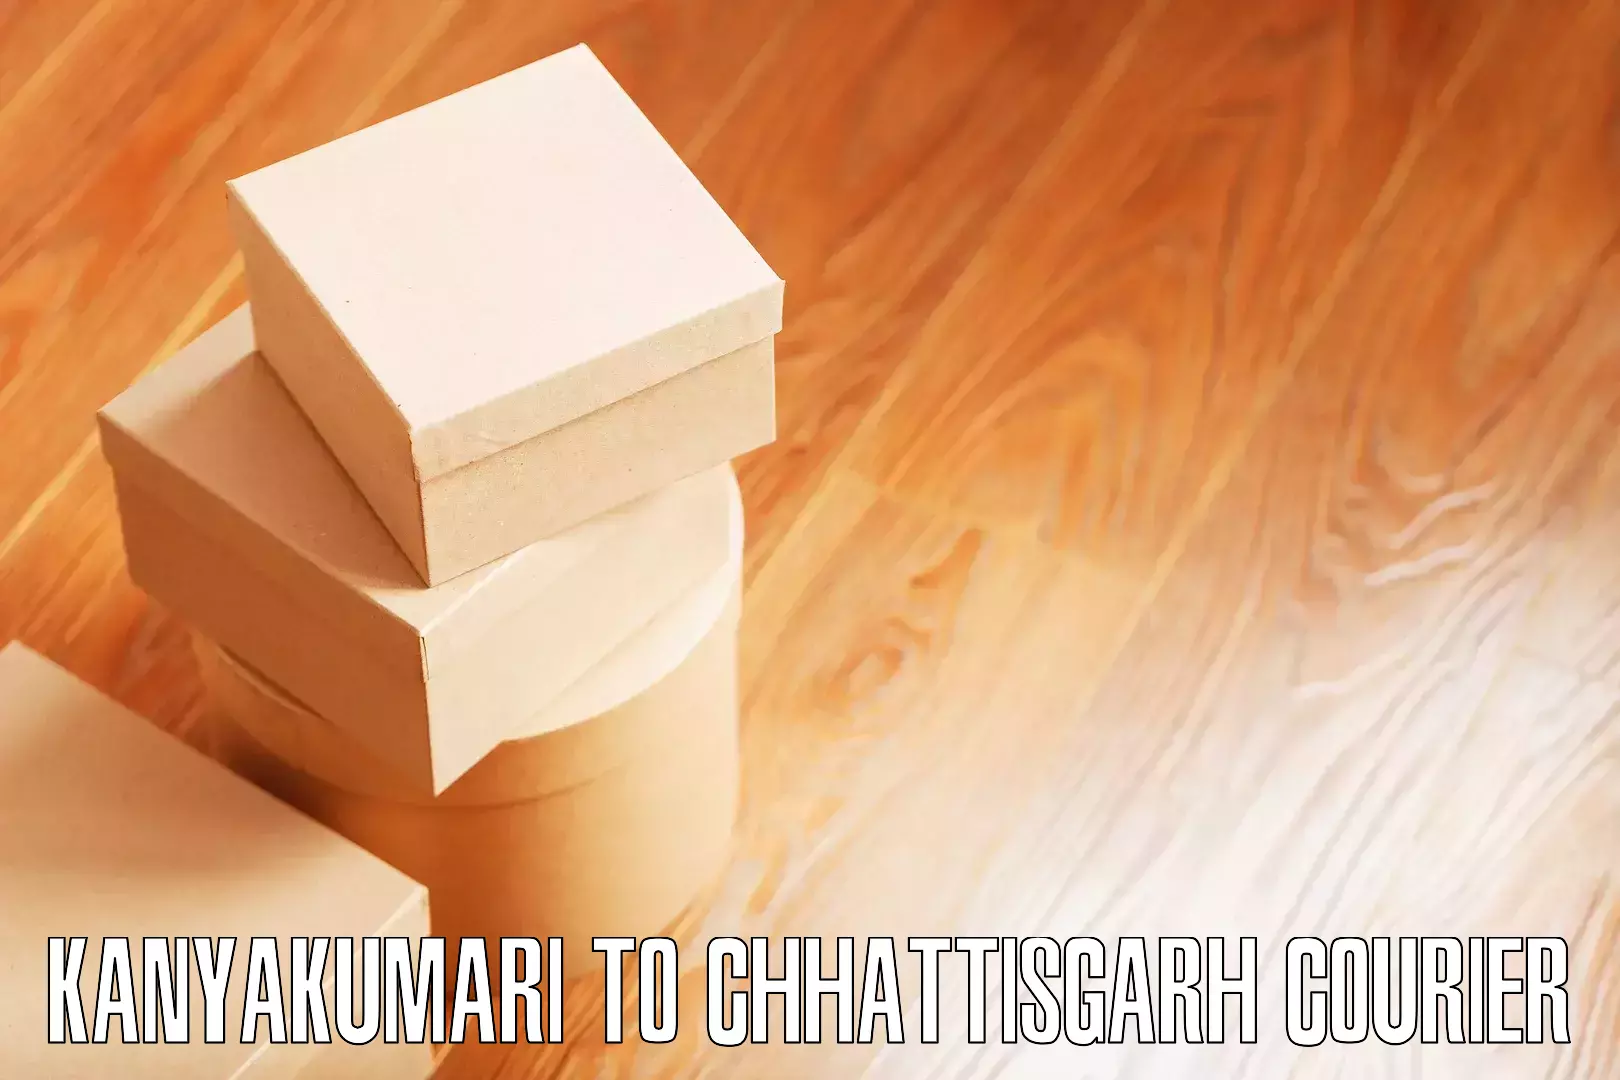 Expert furniture movers Kanyakumari to Patna Chhattisgarh